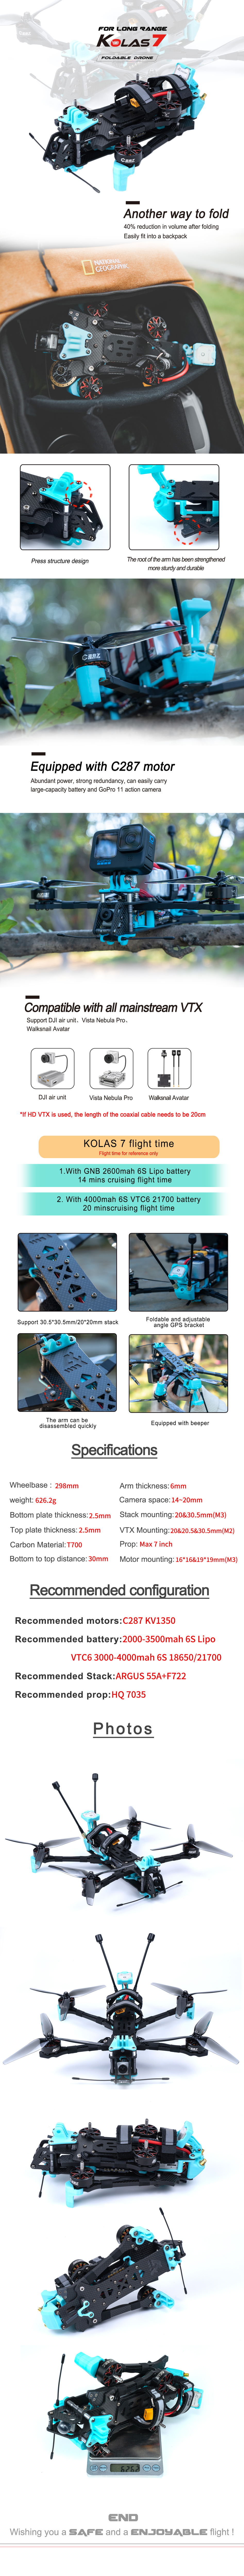 Axisflying KOLAS7" DJI O3 foldable fpv drone for LR- Long Range / cinematic drone with GPS Kolas 7" BNF Mini Long Range Foldable fpv Drone With DJI O3 4k Camera cinematic drone,cinewhoop drone,longrange drone,freestyle drone,fpv drone,fpv quads,7inch longrange drone,5inch quads,6inch quads,7inch LR quads,7" fpv drone,7" fpv quads,7" longrange quads,6" cinematic quads,6" freestyle quads,6" longrange quads,6inch freestyle drone,foldable quads,folding drone,folding quads